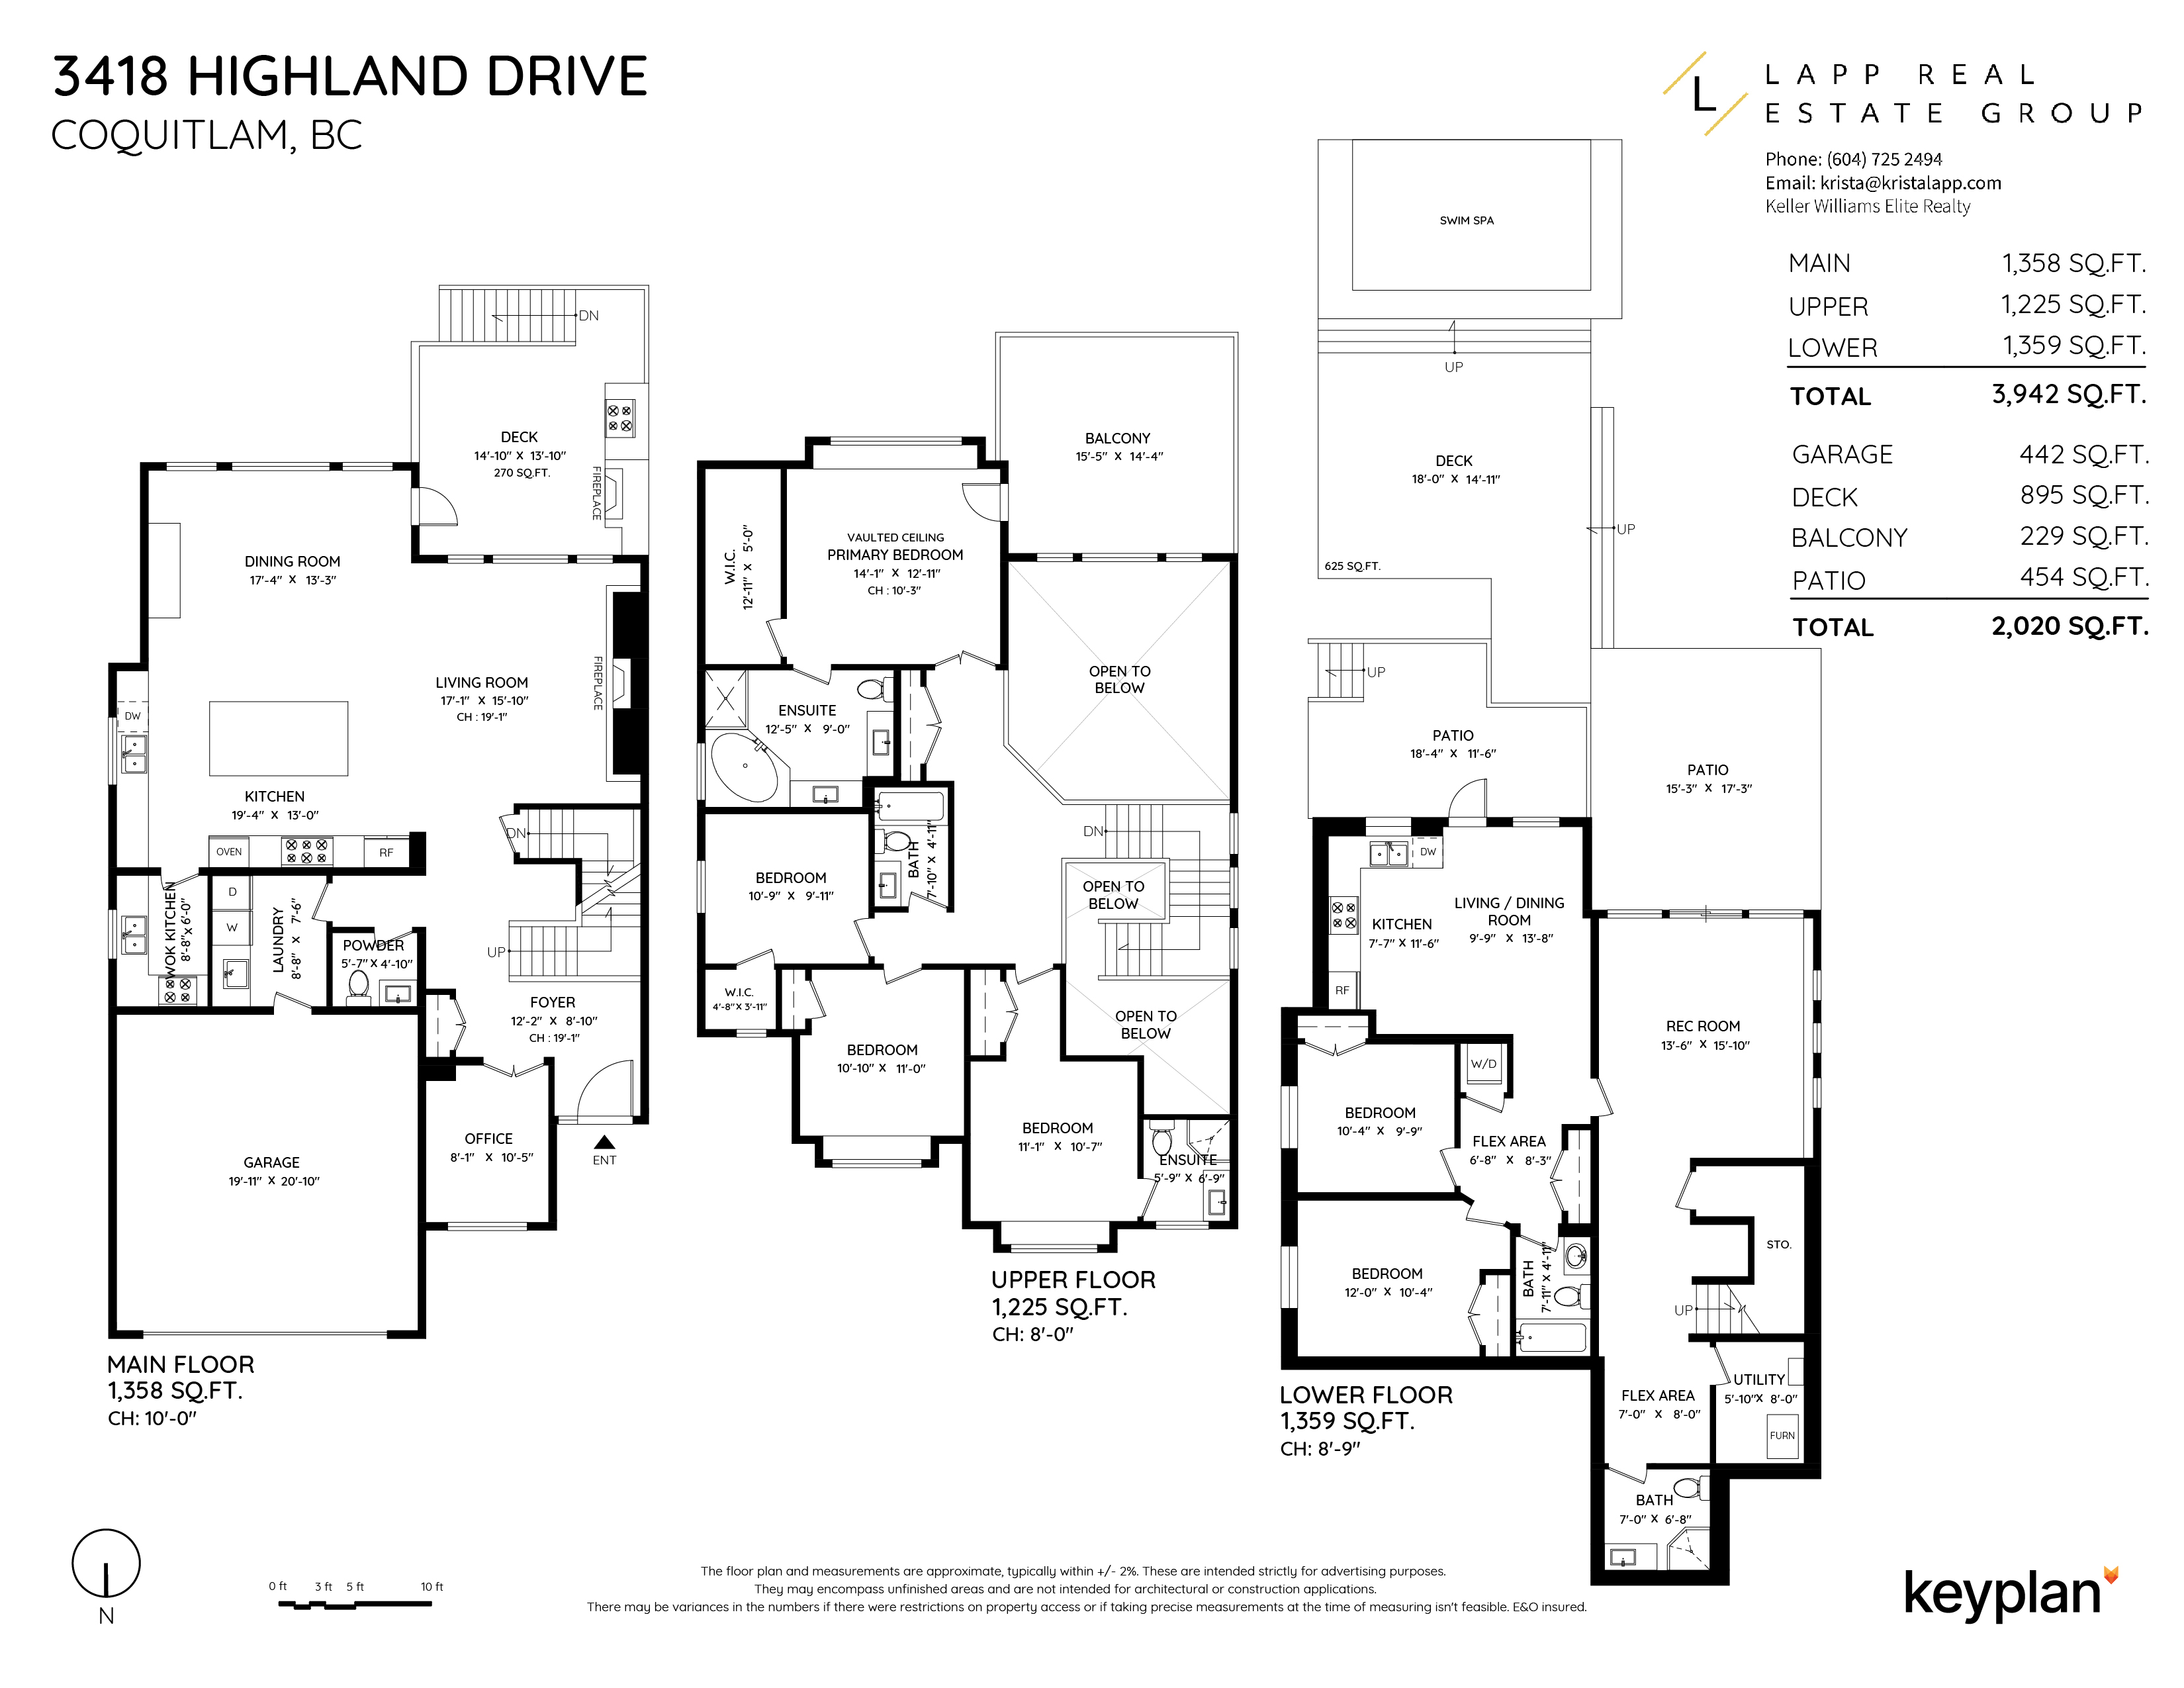 Krista Lapp - 3418 Highland Drive, Coquitlam, BC, Canada | Floor Plan 1